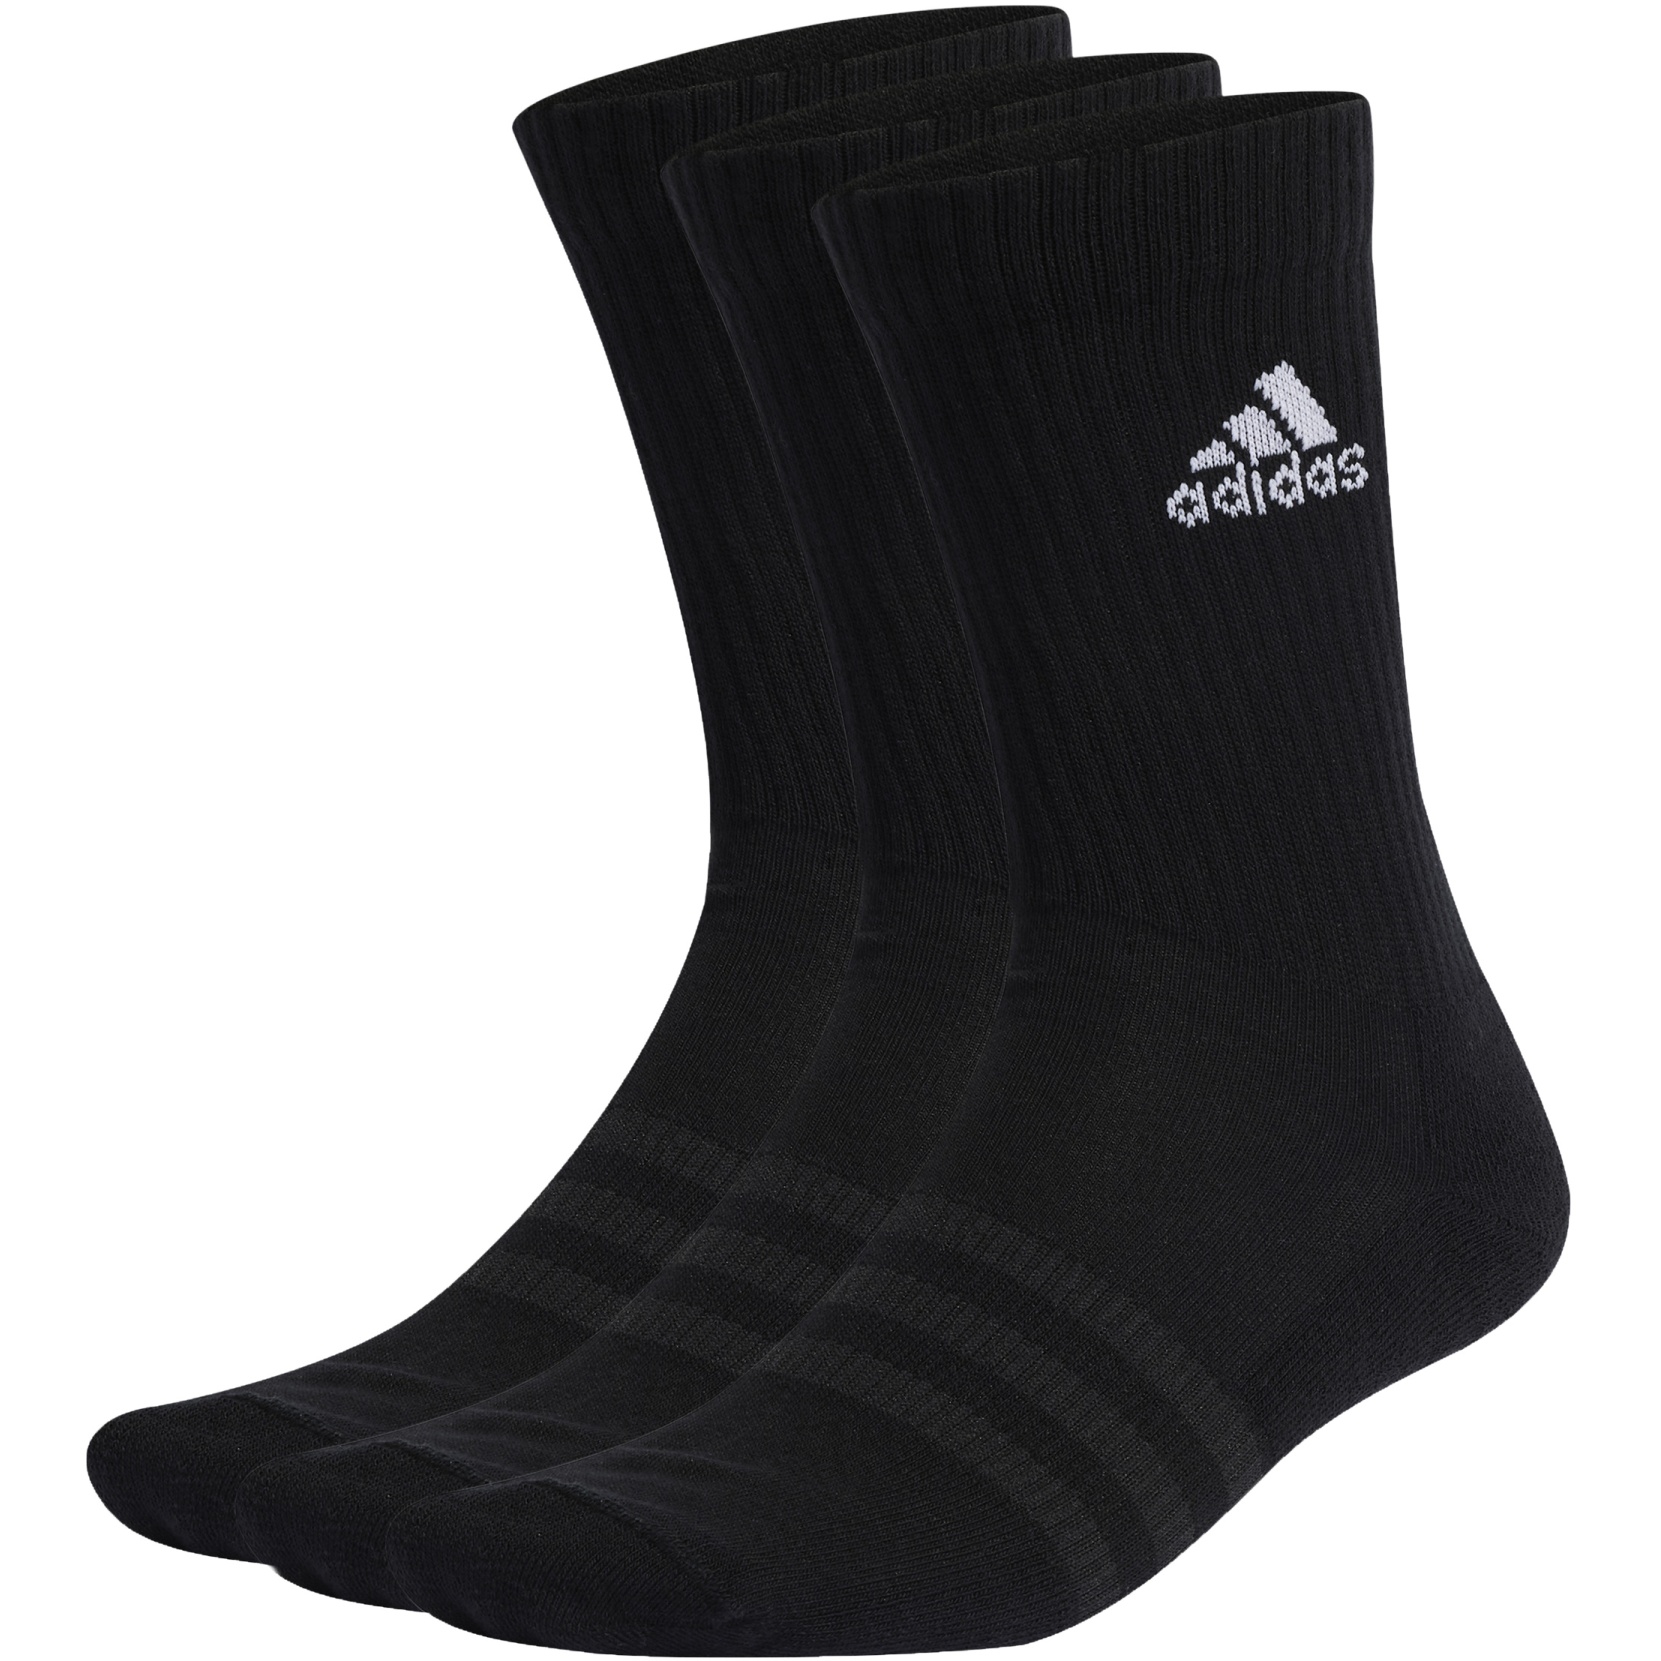 Produktbild von adidas Cushioned Crew Socken - 3 Paar - schwarz/weiß IC1310